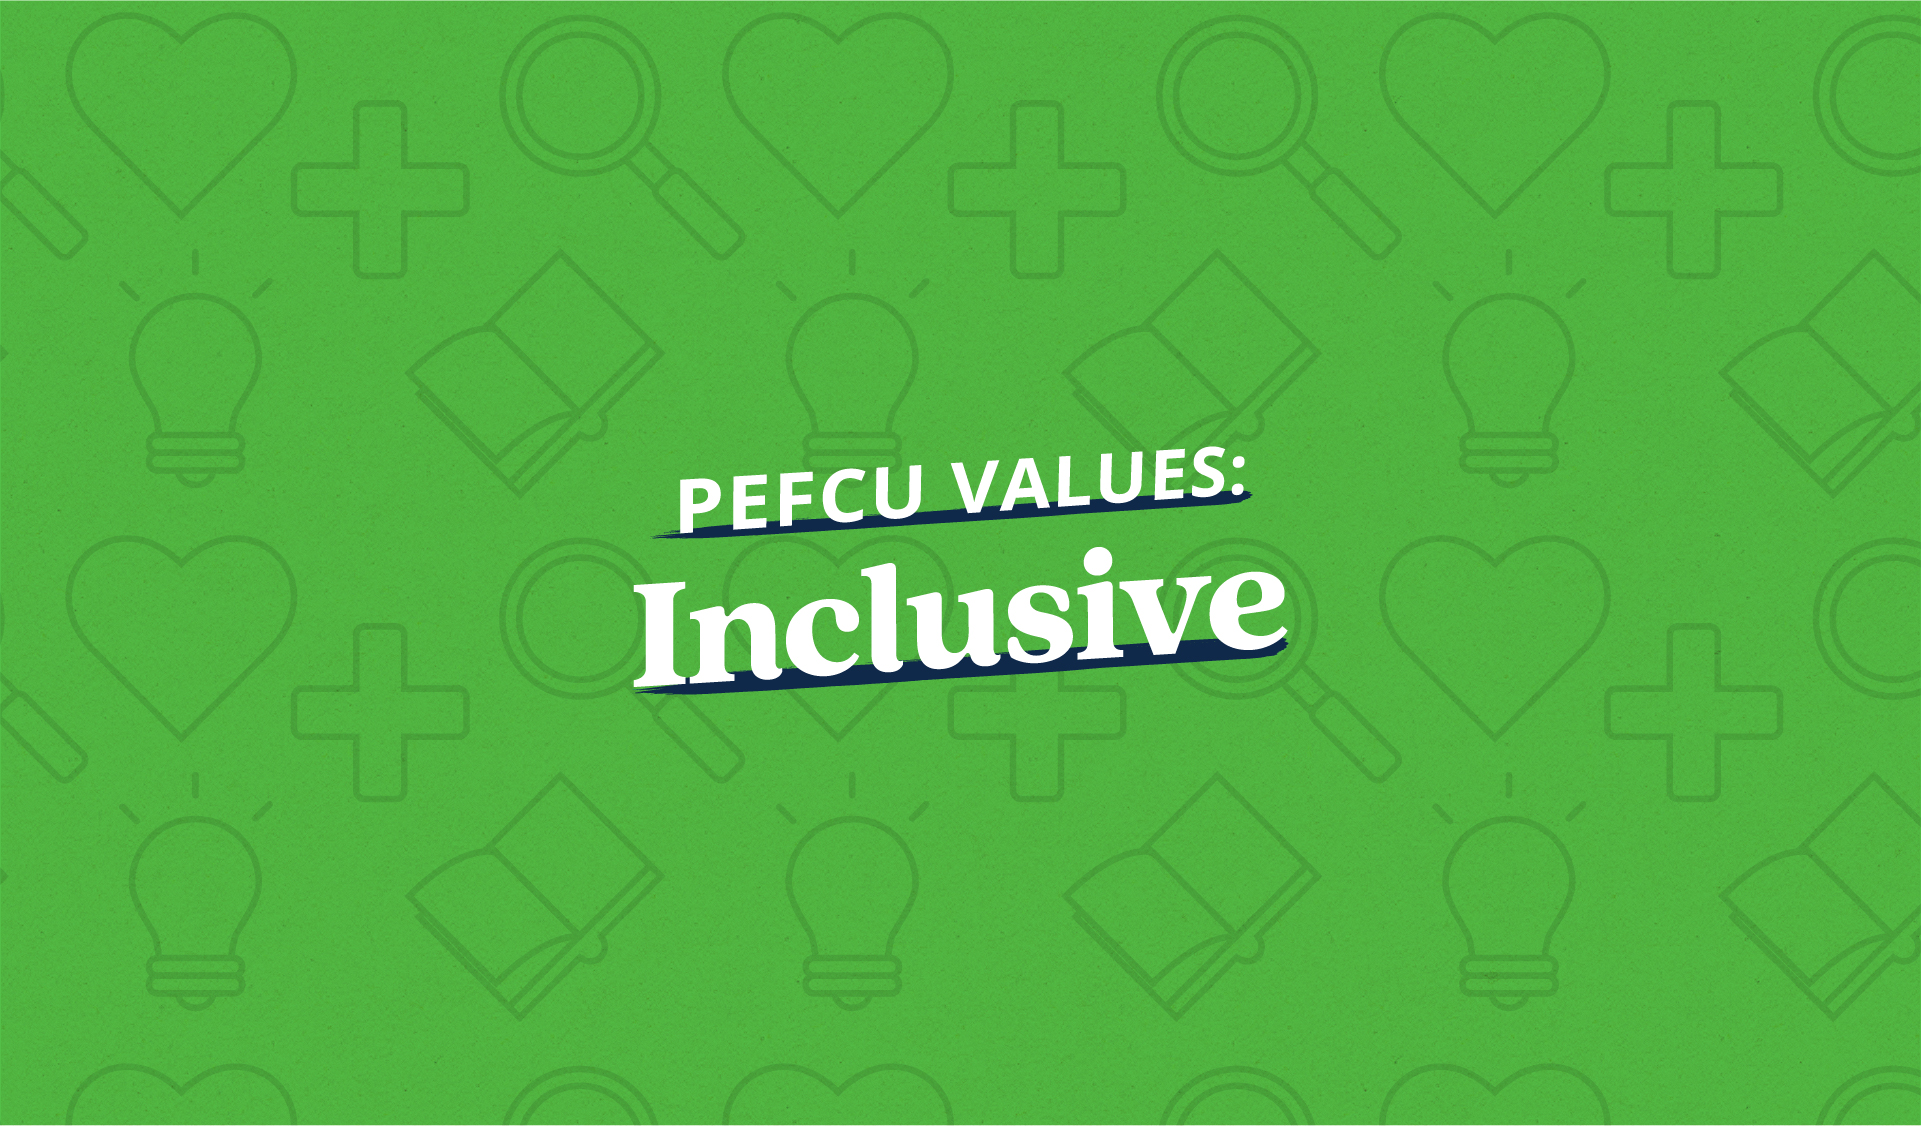 PEFCU Values: Inclusive